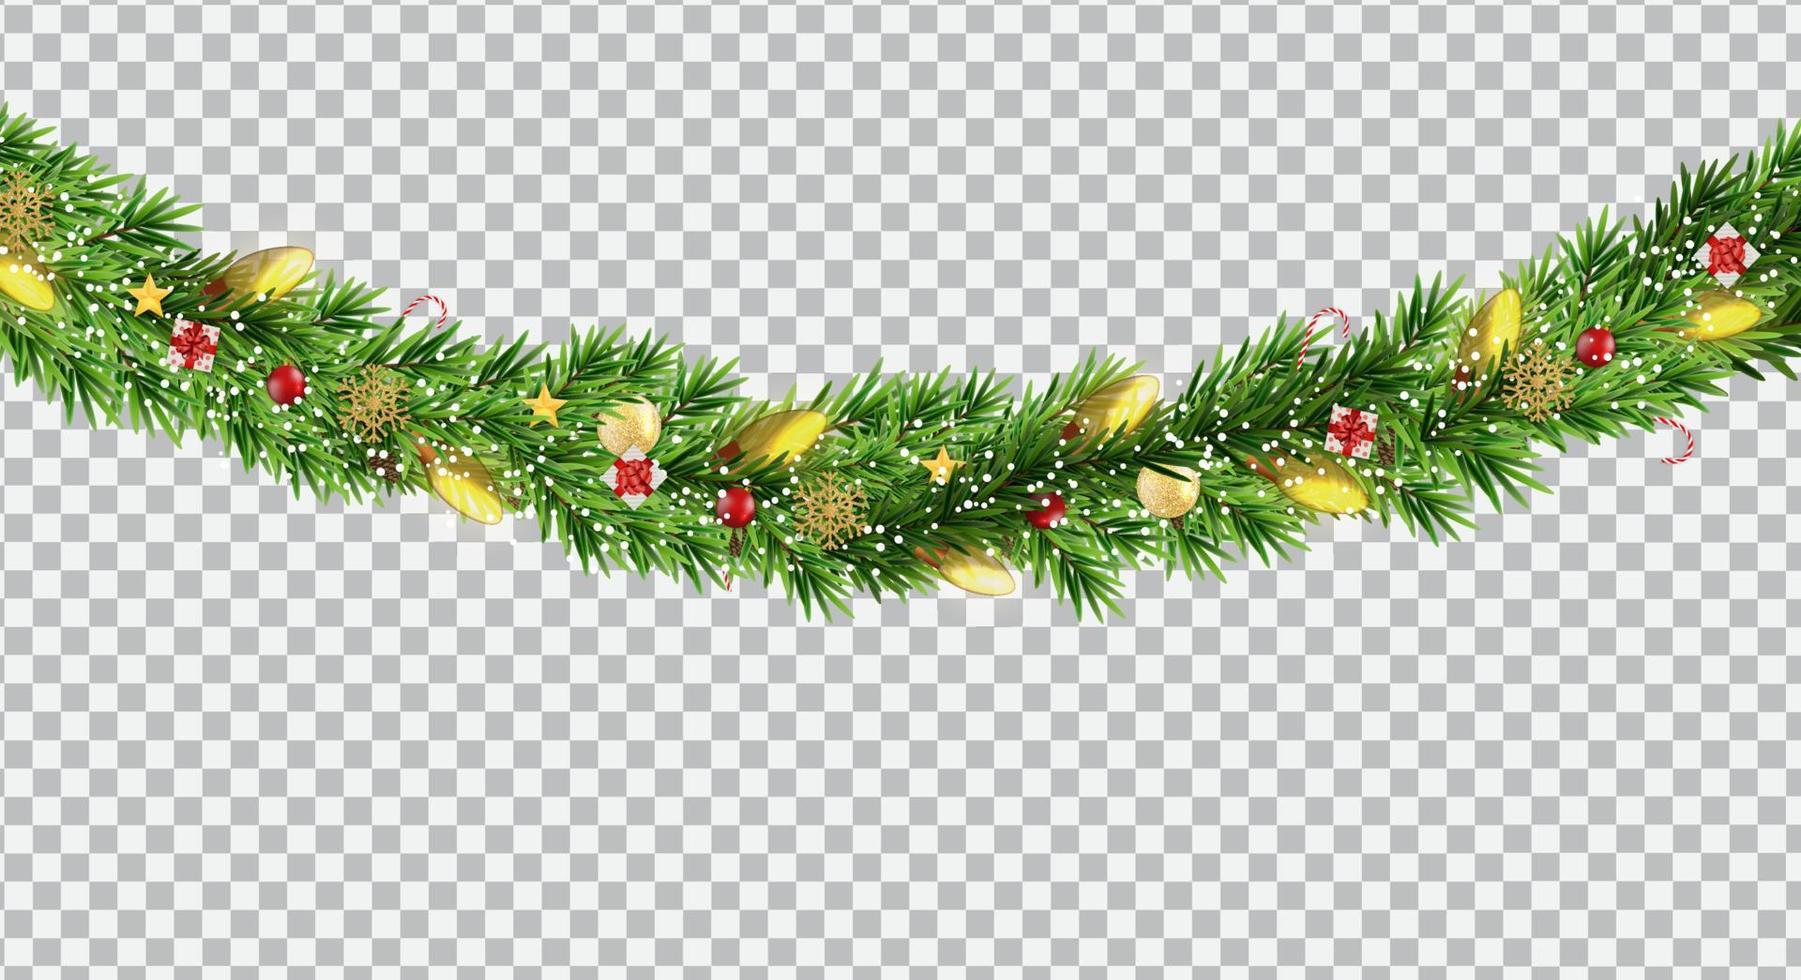 ampia ghirlanda di bordo natalizio da rami di abete, palline, pigne e altri ornamenti, isolati su sfondo trasparente. illustrazione vettoriale